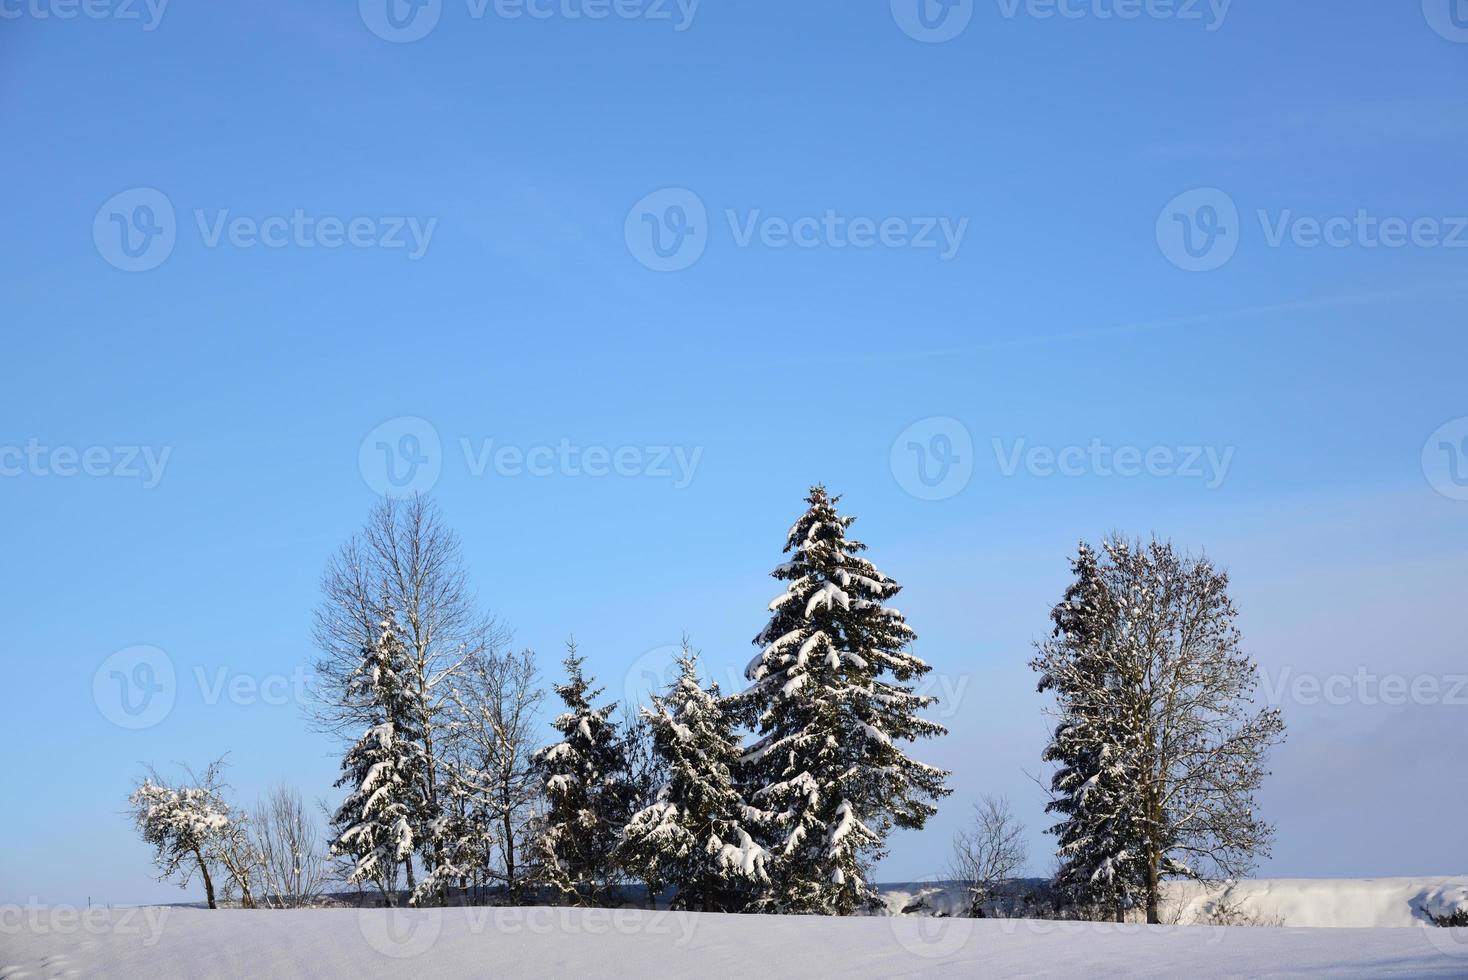 in winter, met sneeuw bedekt bomen staan in een wit sneeuw landschap tegen een blauw lucht foto